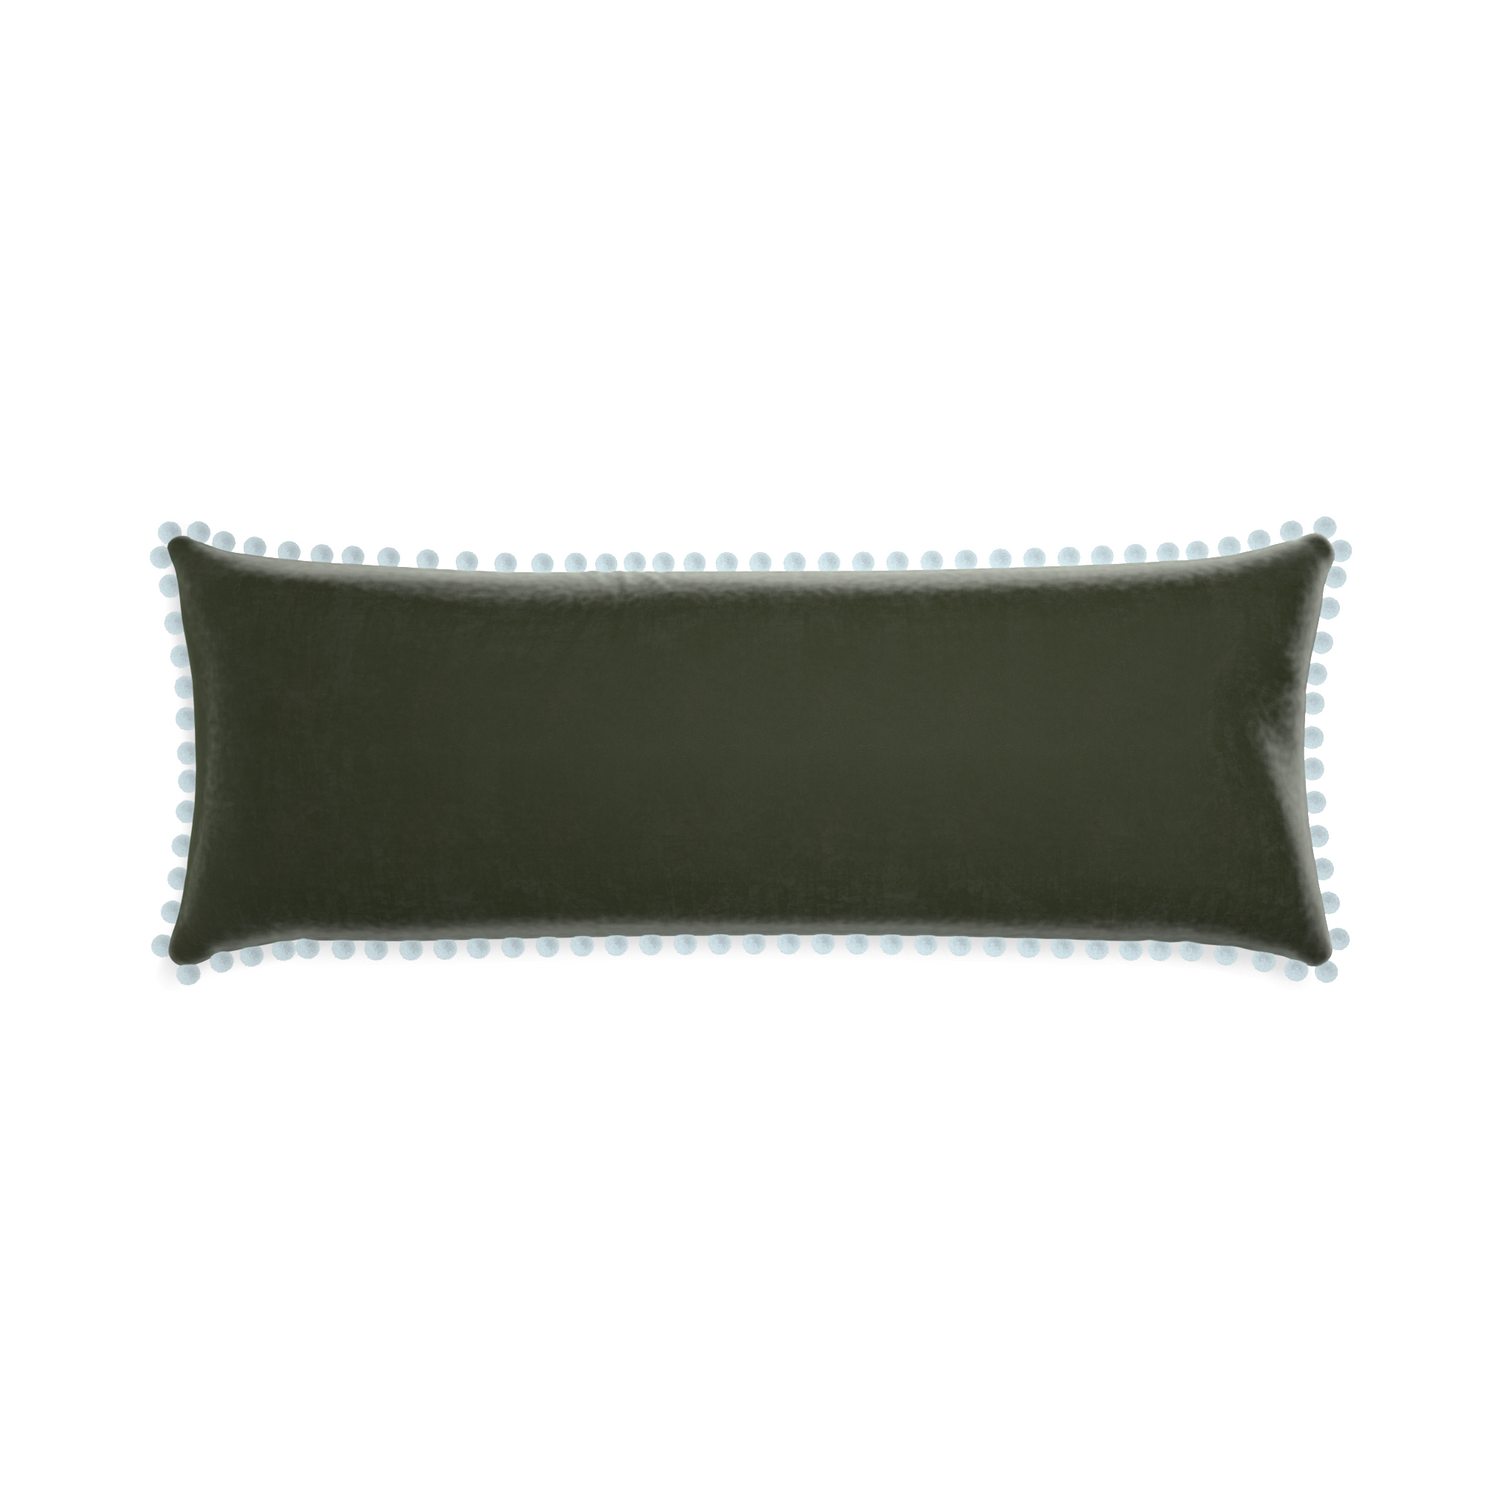 rectangle fern green velvet pillow with light blue pom poms